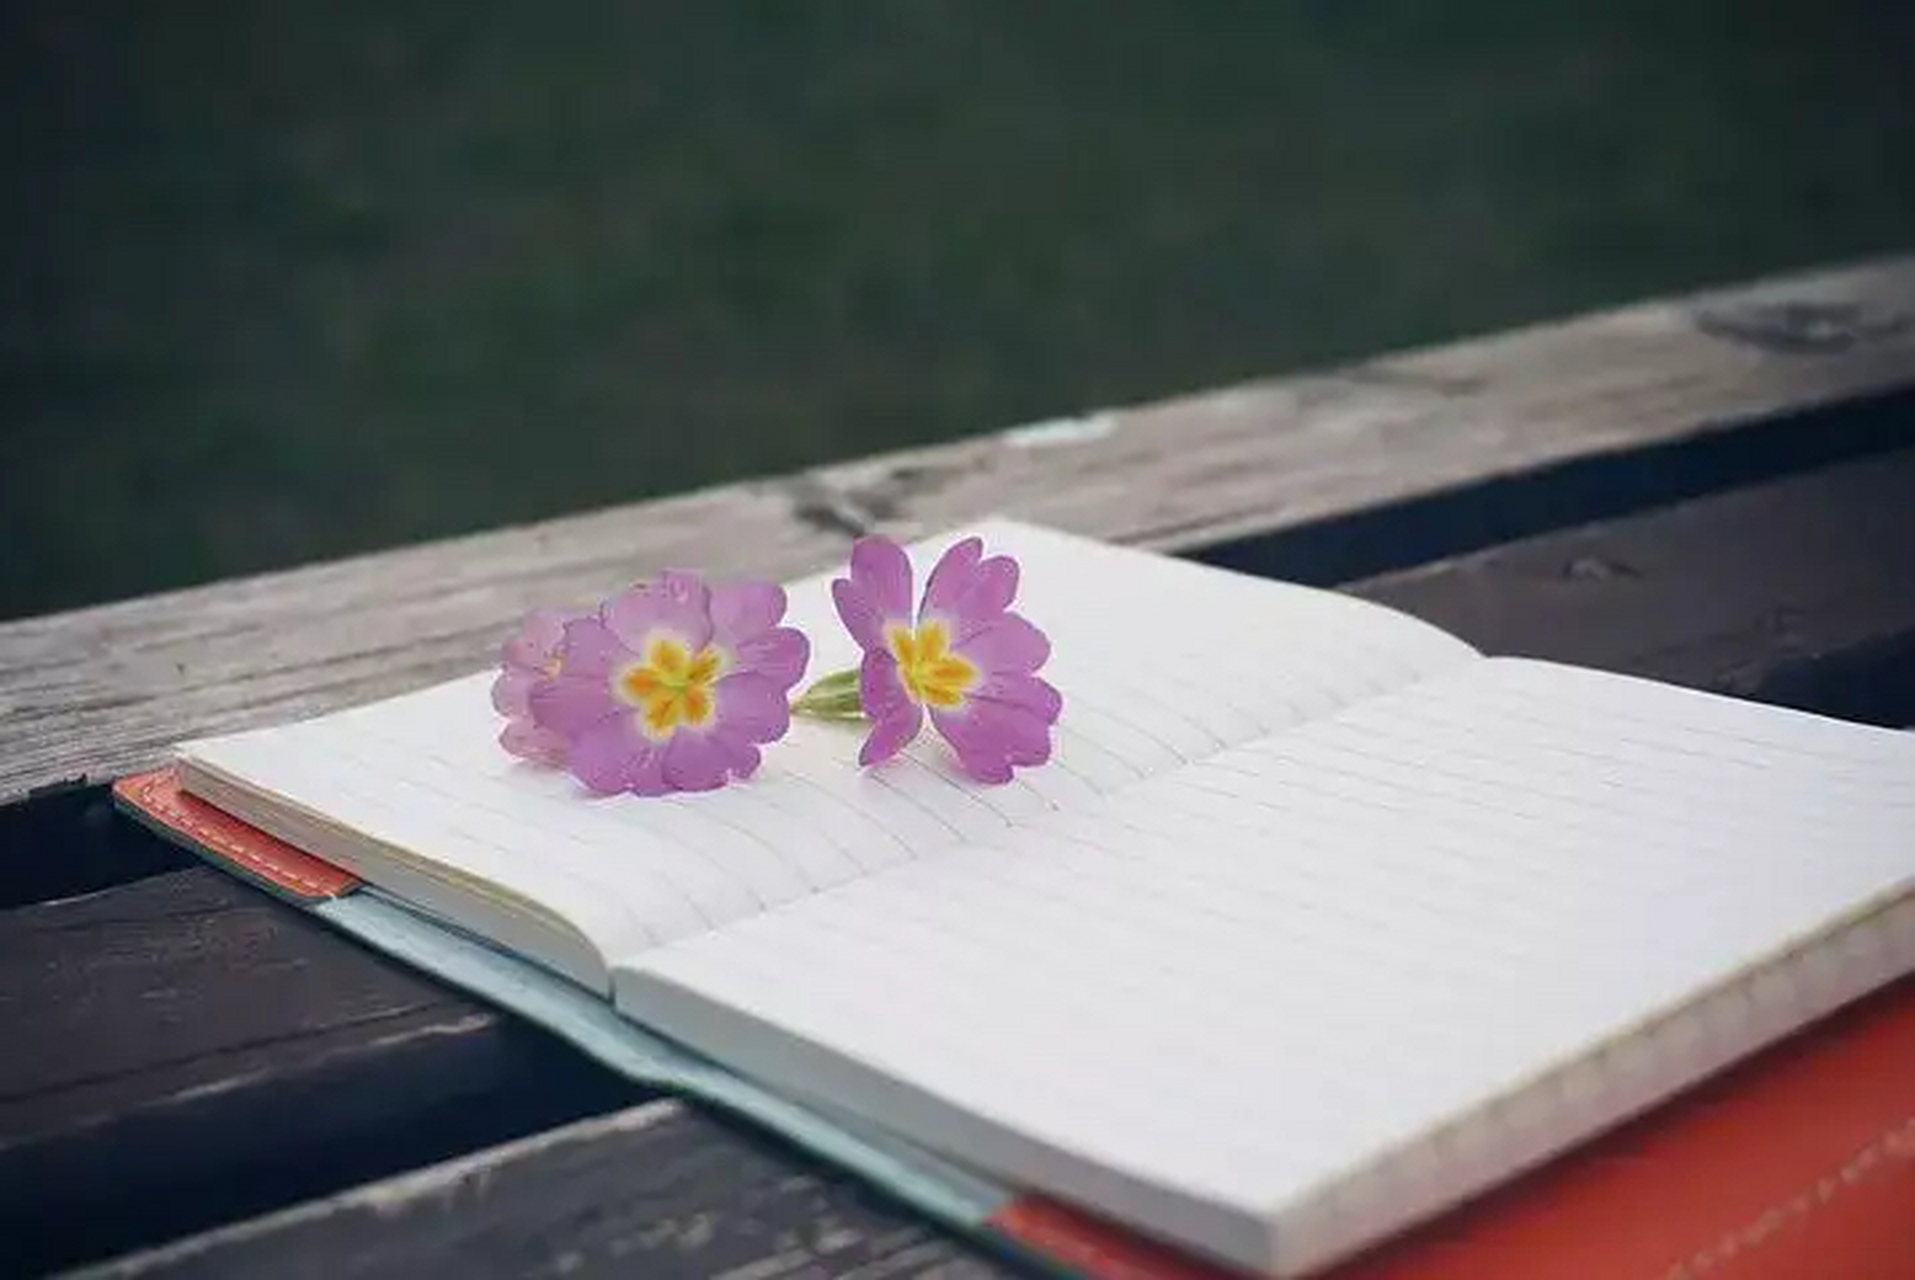 螃蟹在剥我的壳 笔记本在写我 漫天的我落在枫叶上雪花上 而你在想我